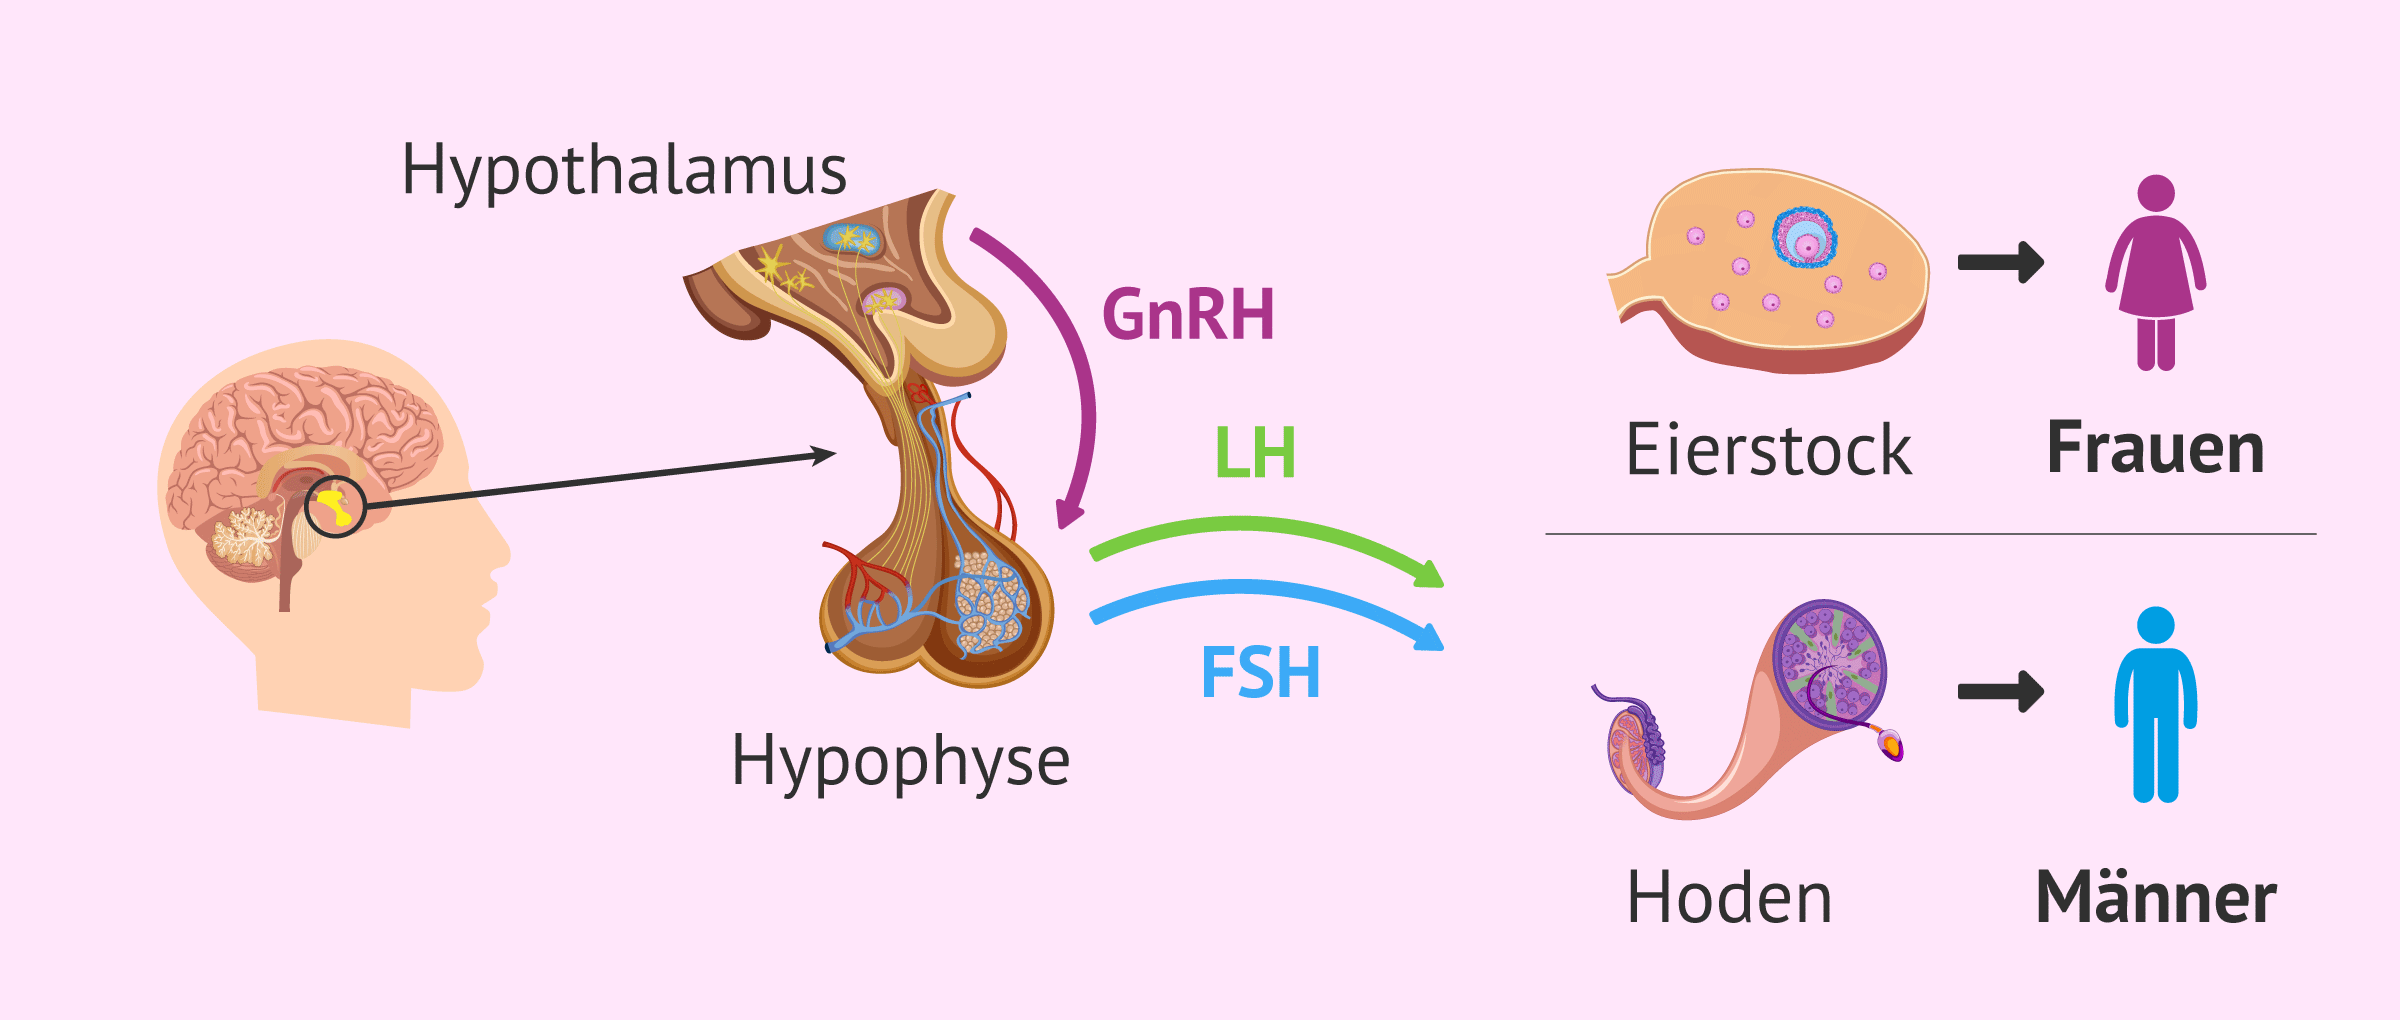 Hypothalamus-Hypophysen-Keimdrüsen-Achse